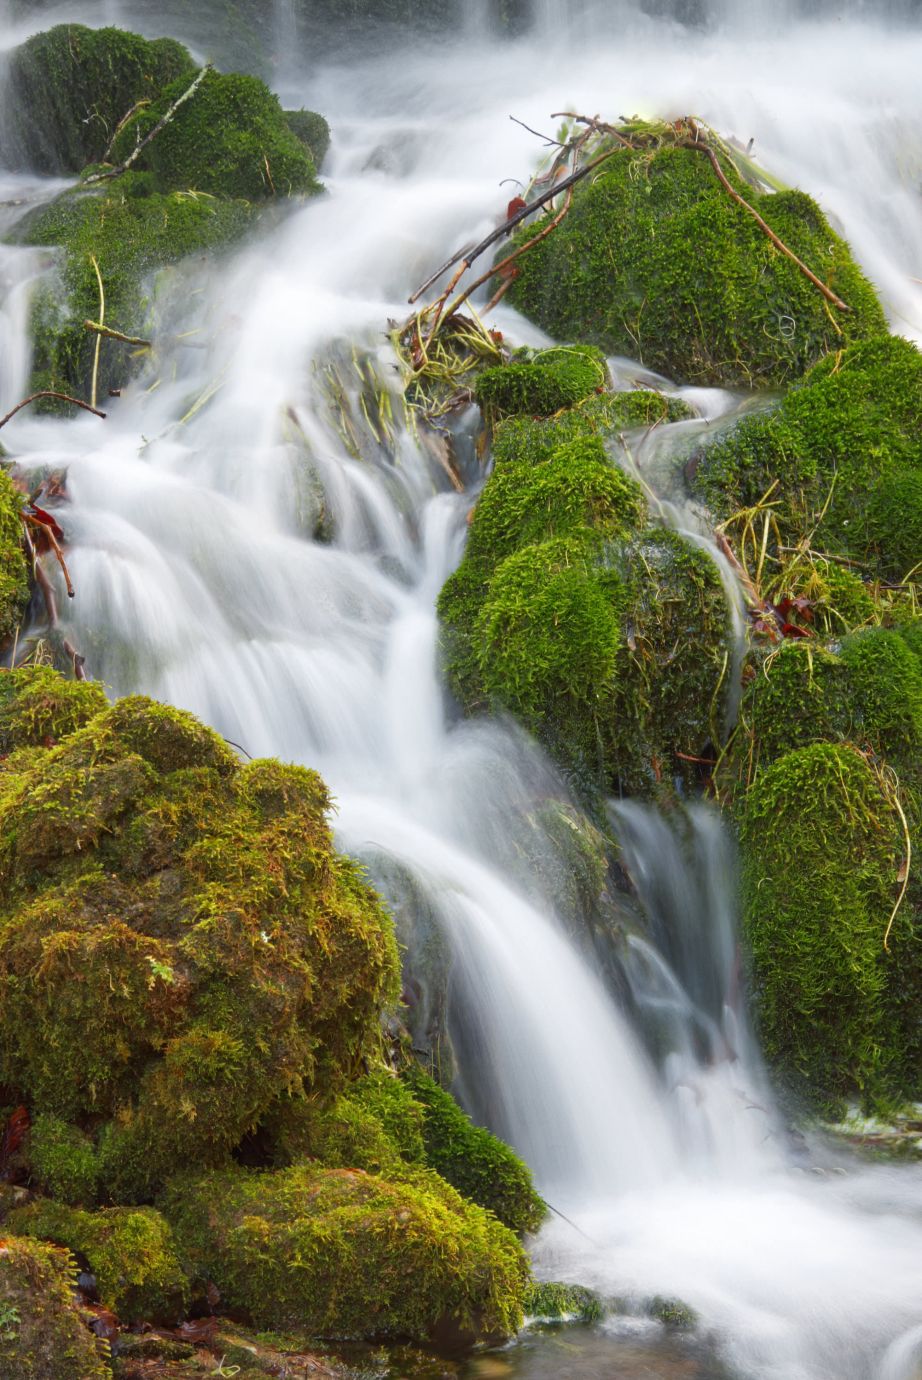 Waterfall-rocks-moss-Little-Bredy-Dorset-1104-25022022